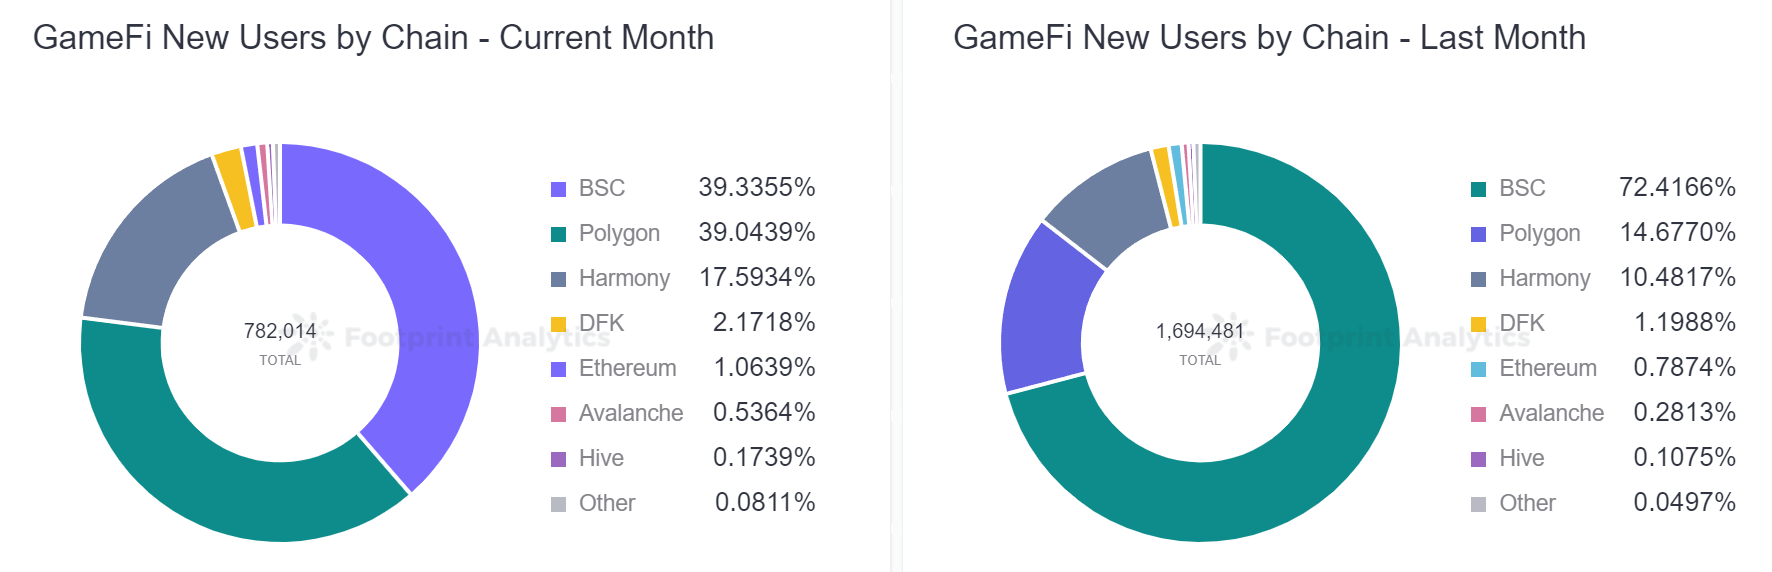 GameFi 在宏观趋势上出现下滑，但个别项目却大放异彩